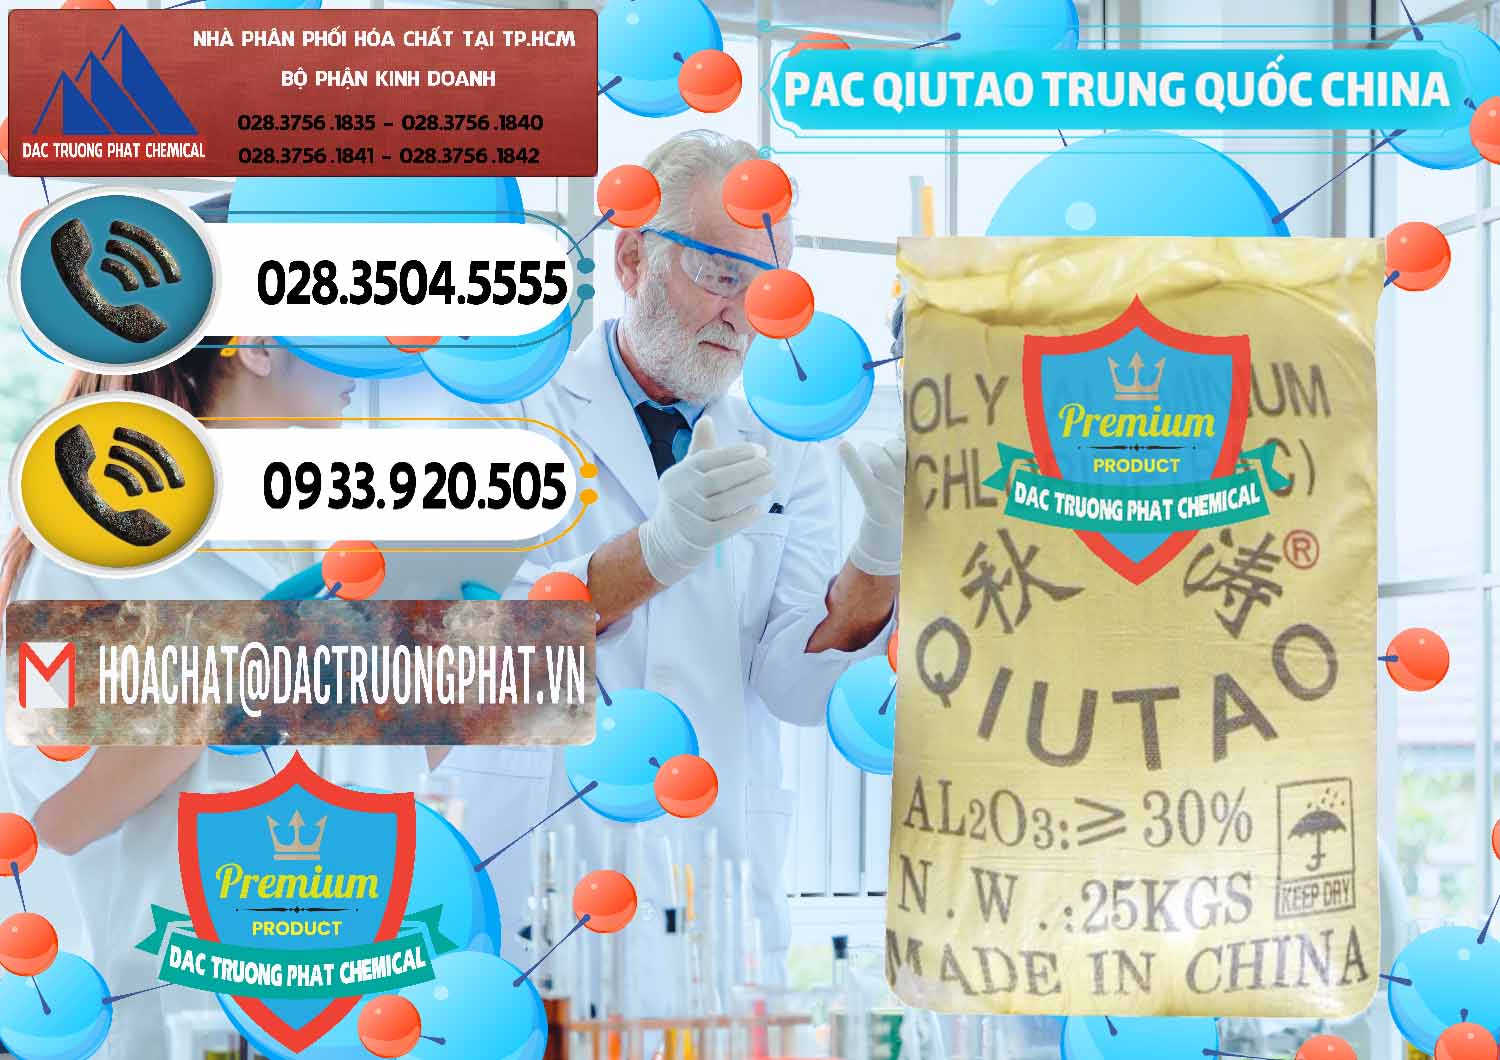 Chuyên bán - cung ứng PAC - Polyaluminium Chloride Qiutao Trung Quốc China - 0267 - Cty cung cấp & phân phối hóa chất tại TP.HCM - hoachatdetnhuom.vn